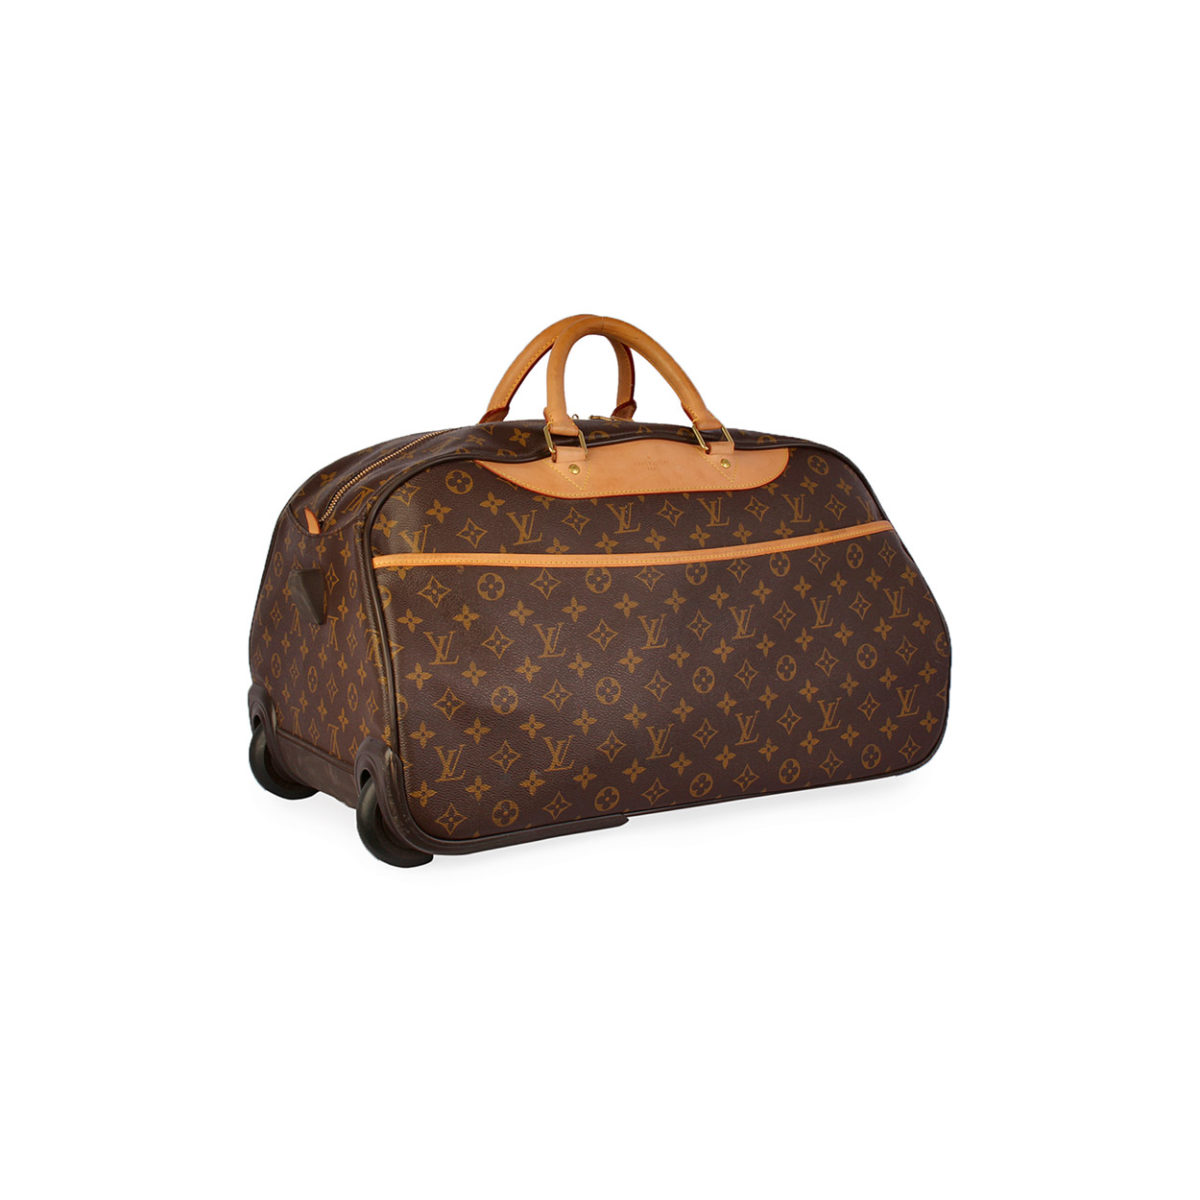 Louis Vuitton Travel Bag Sizes | IQS Executive